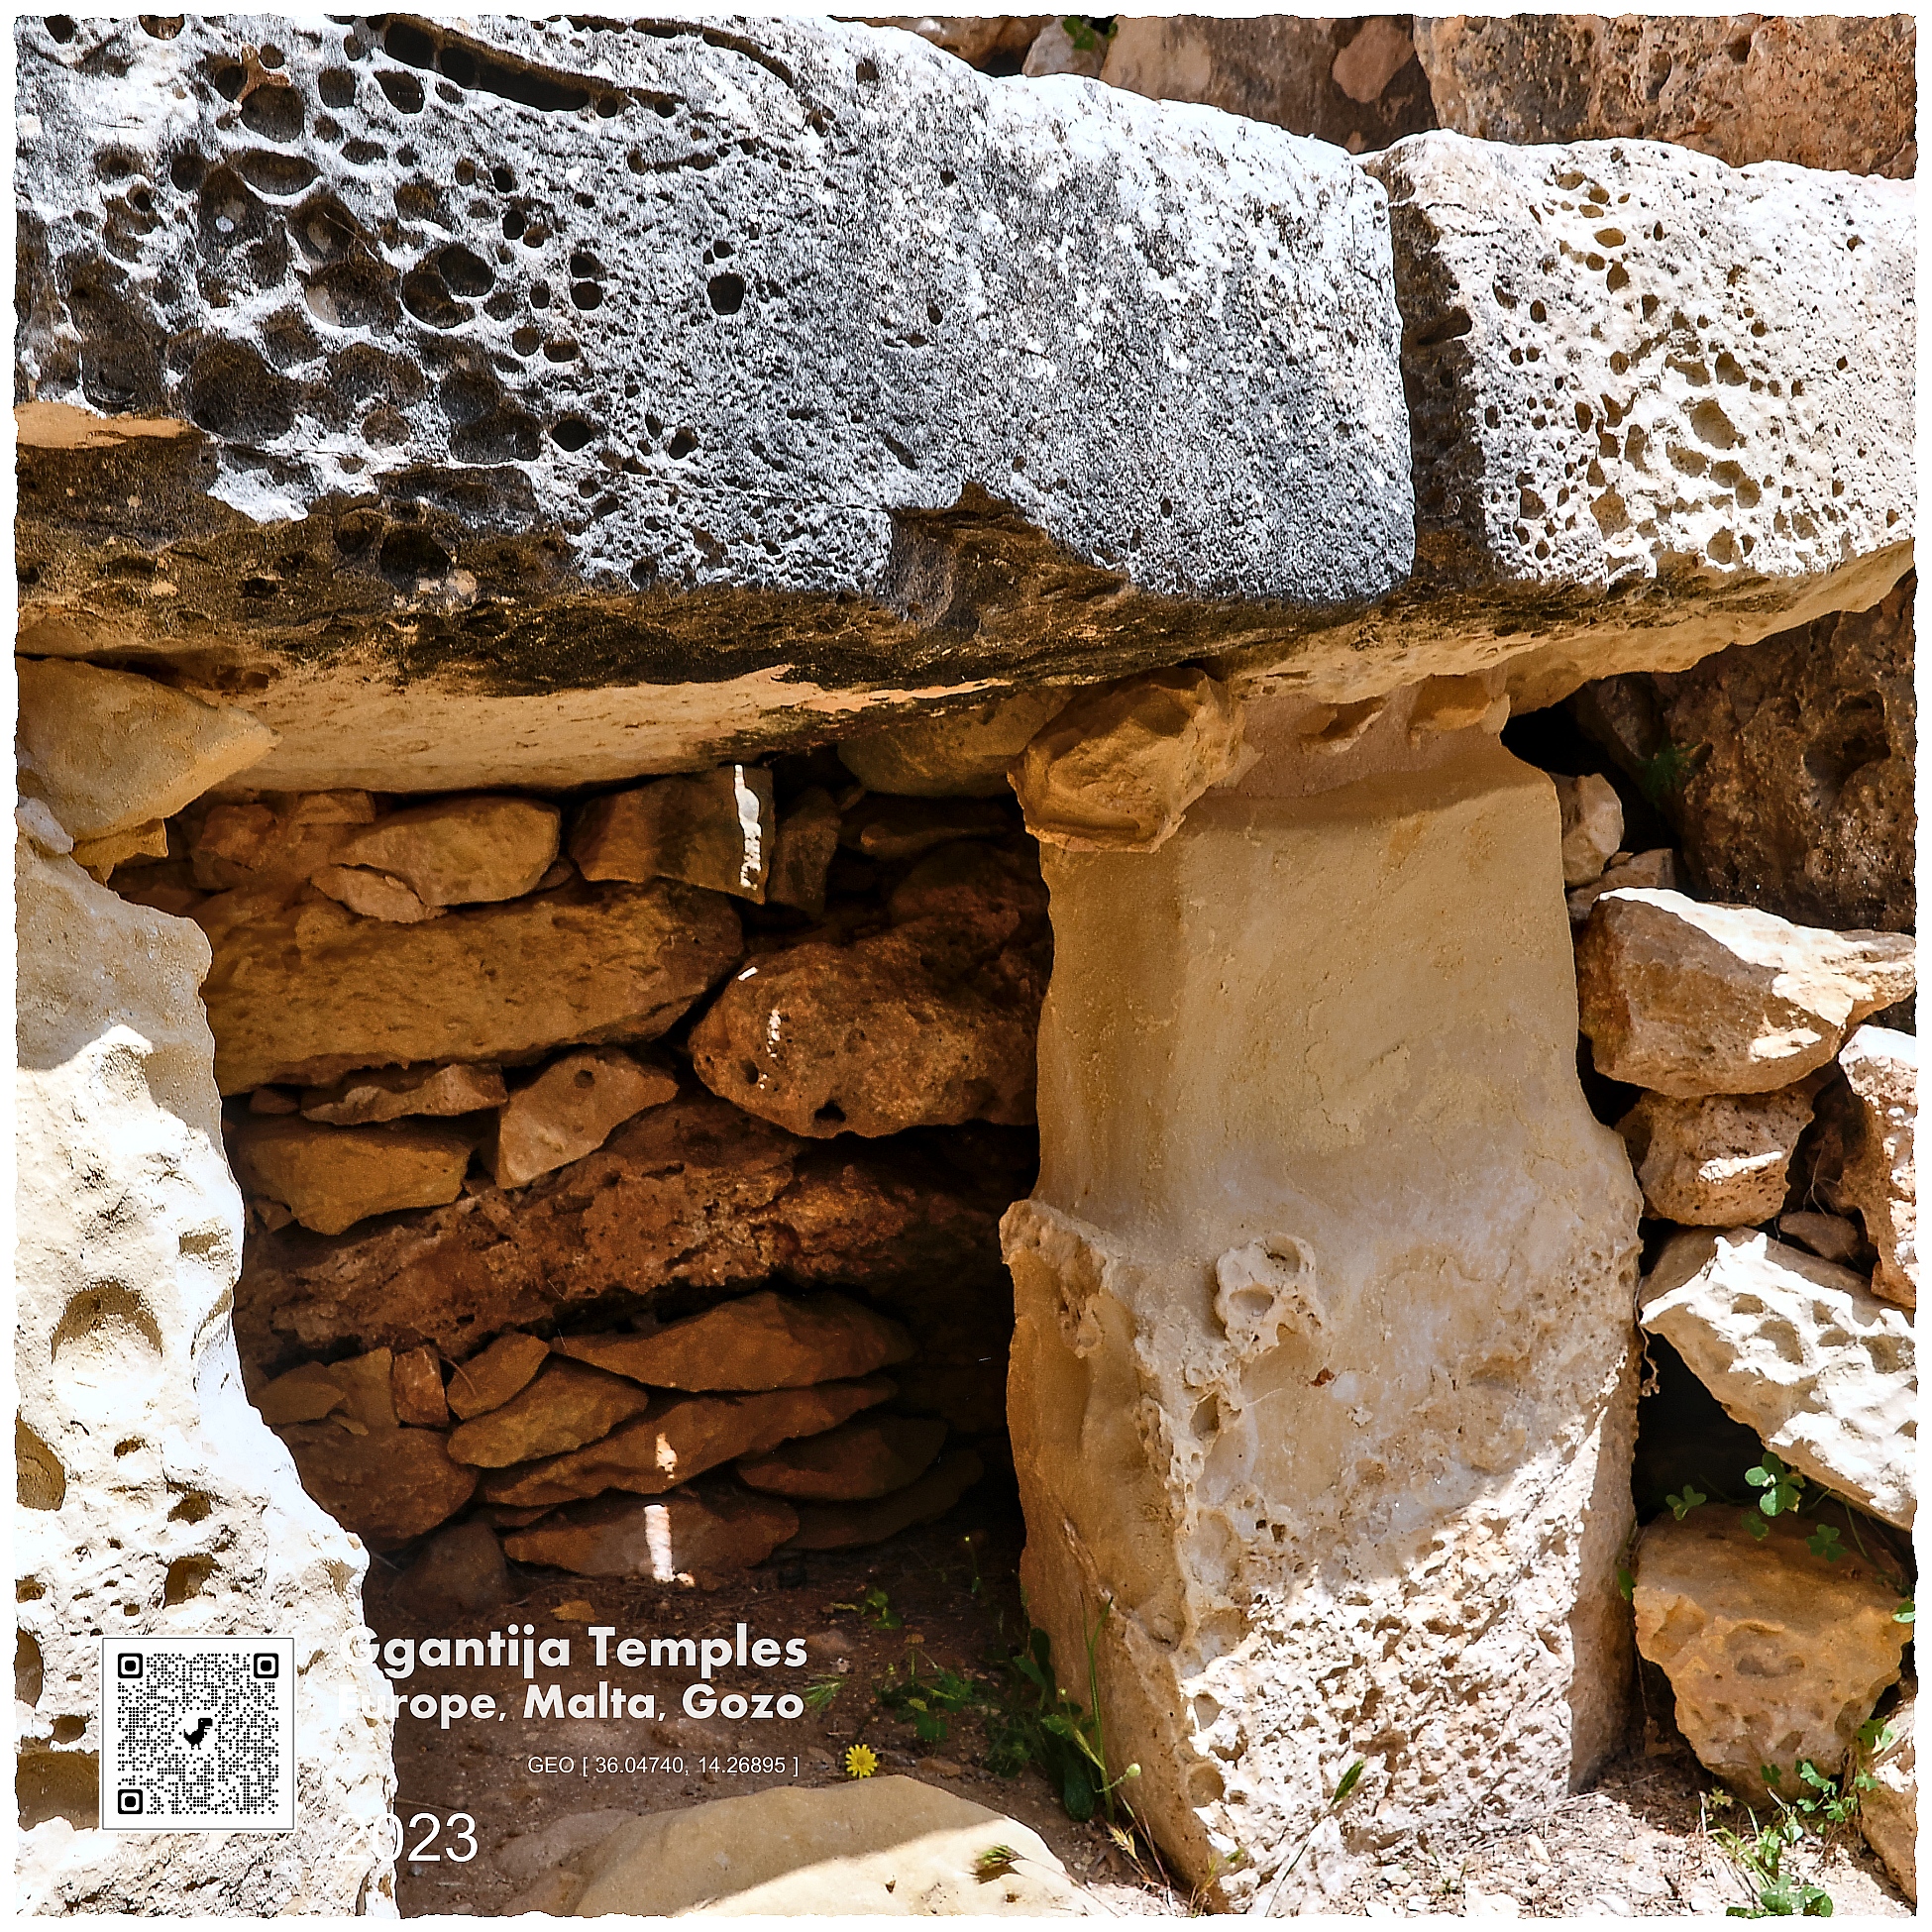 Malta Gozo megalityczna świątynia Ggantija